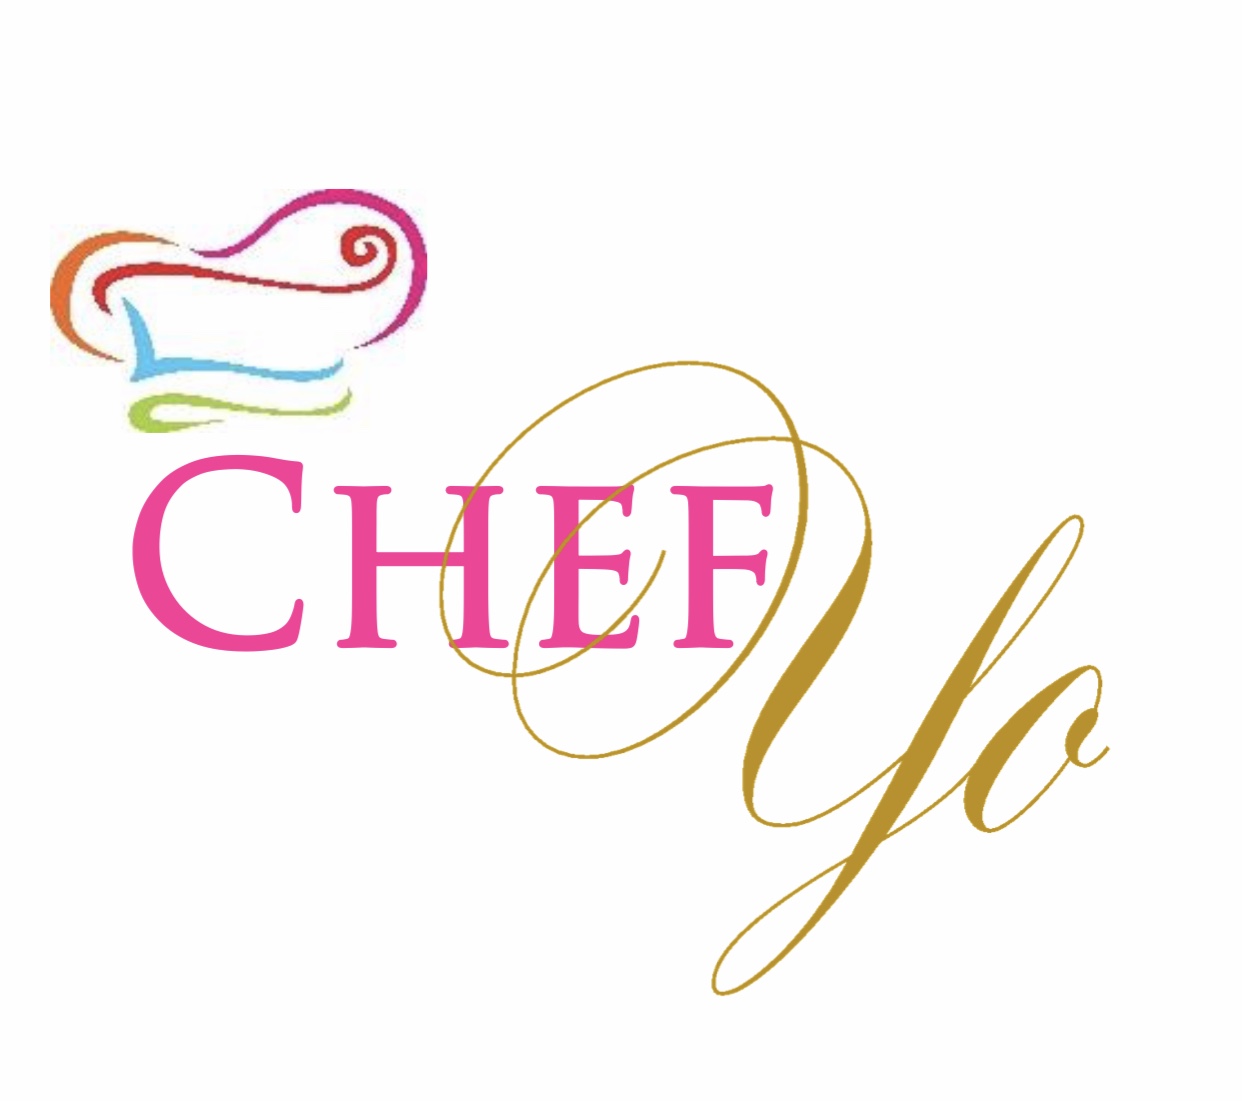 chefyo.net